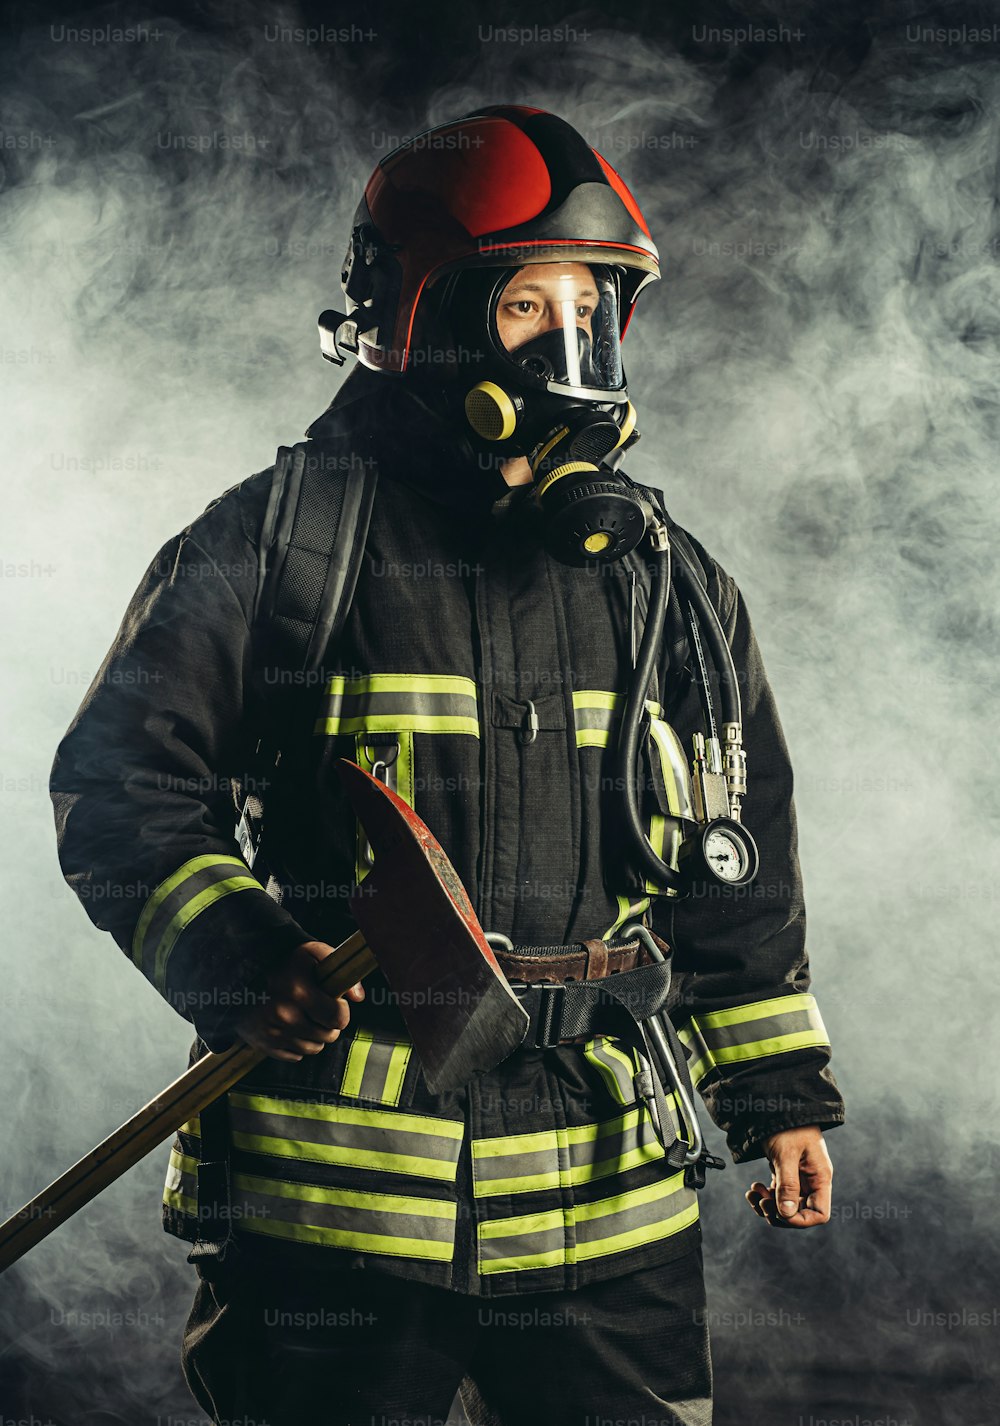 Bombero fuerte de mediana edad que va a salvar y proteger a las personas del fuego, usando máscara o casco especial, uniforme protector